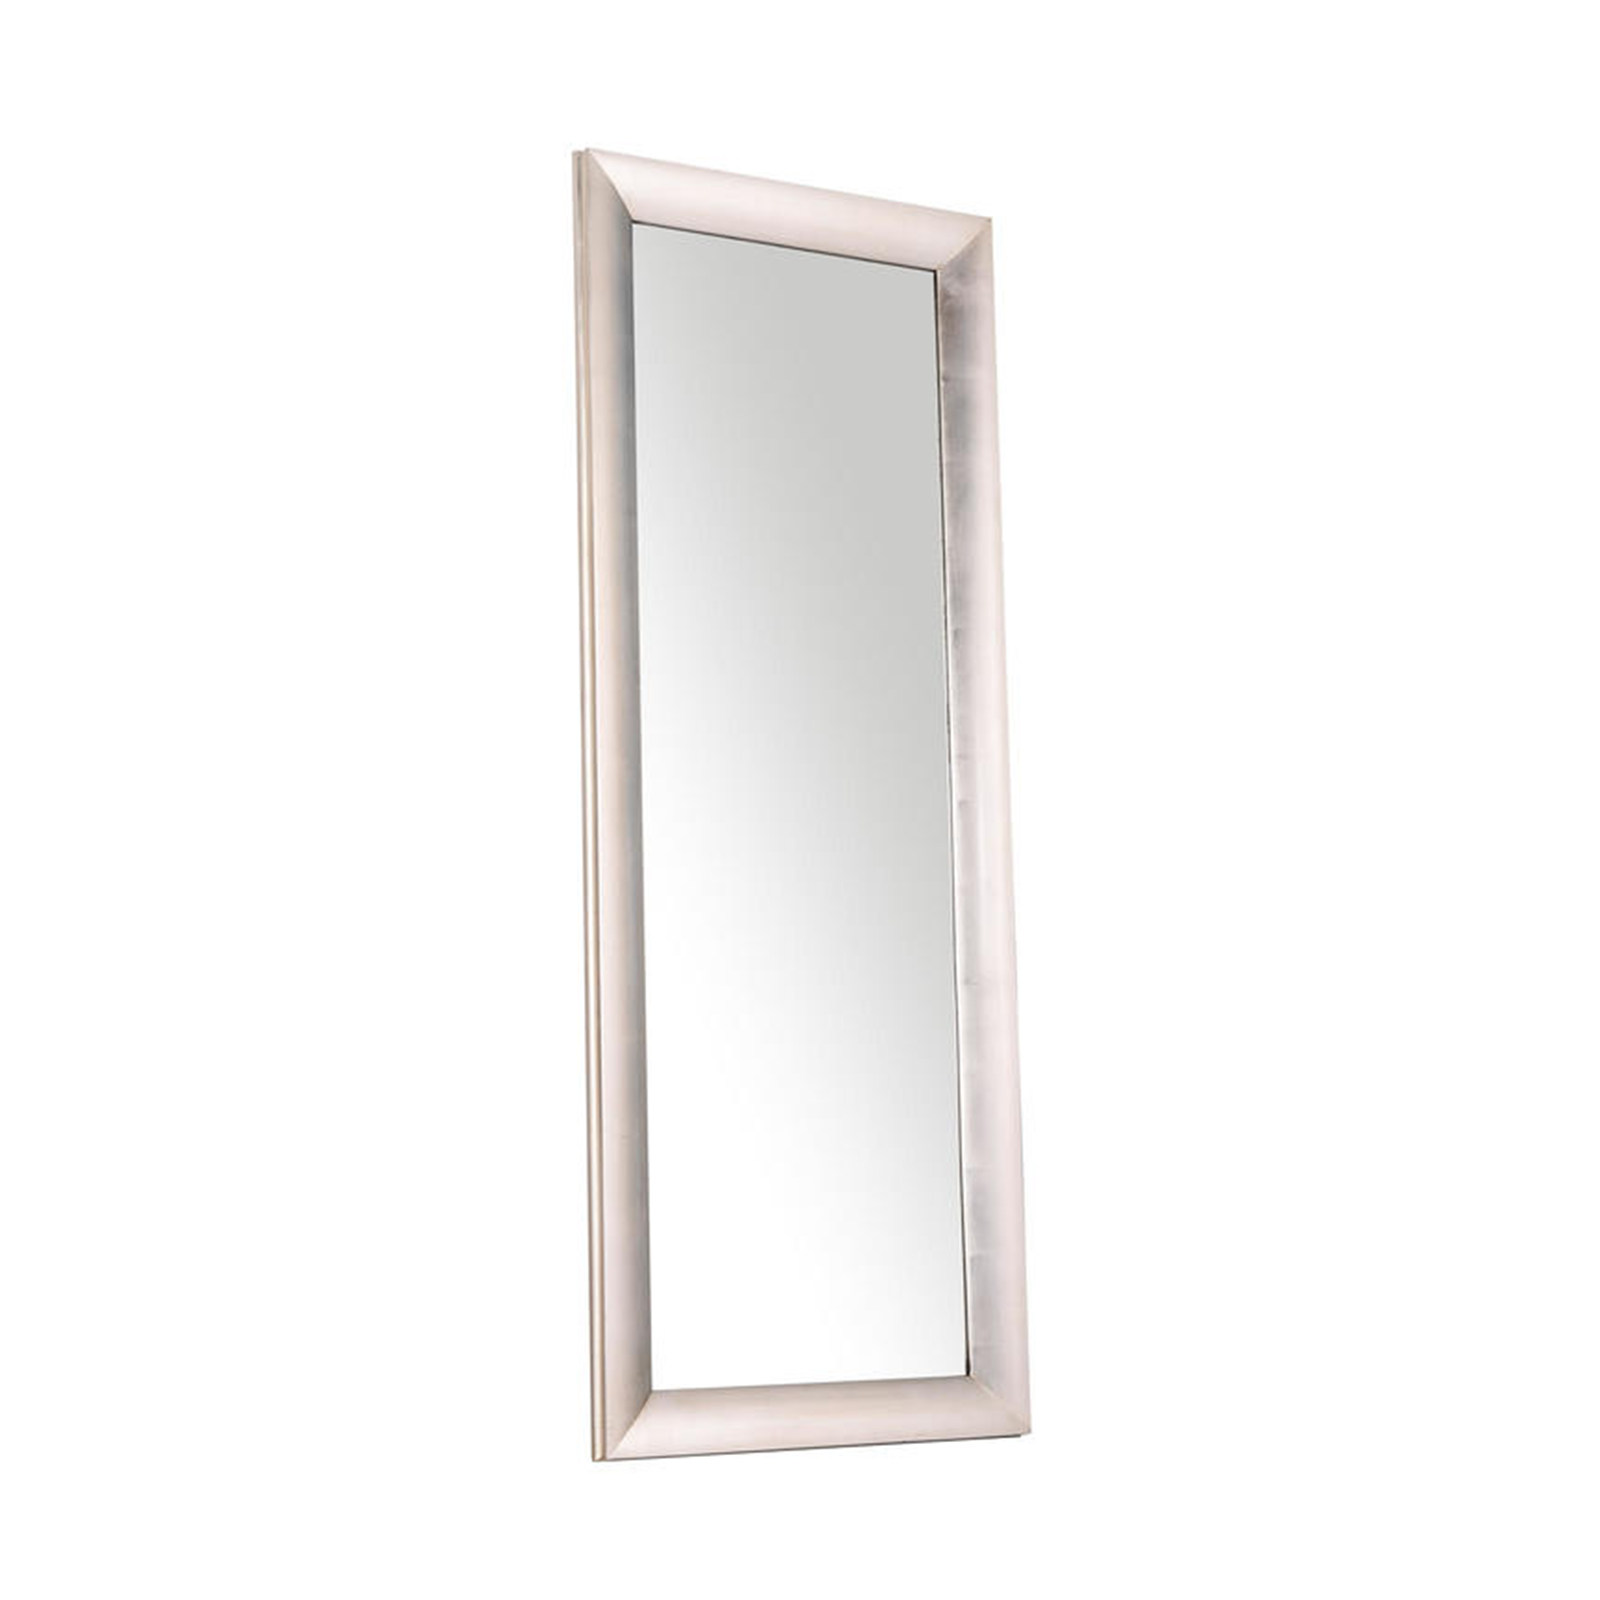 Specchio lungo da parete "Enea" cornice in legno argento rettangolare cm 81x40 183h